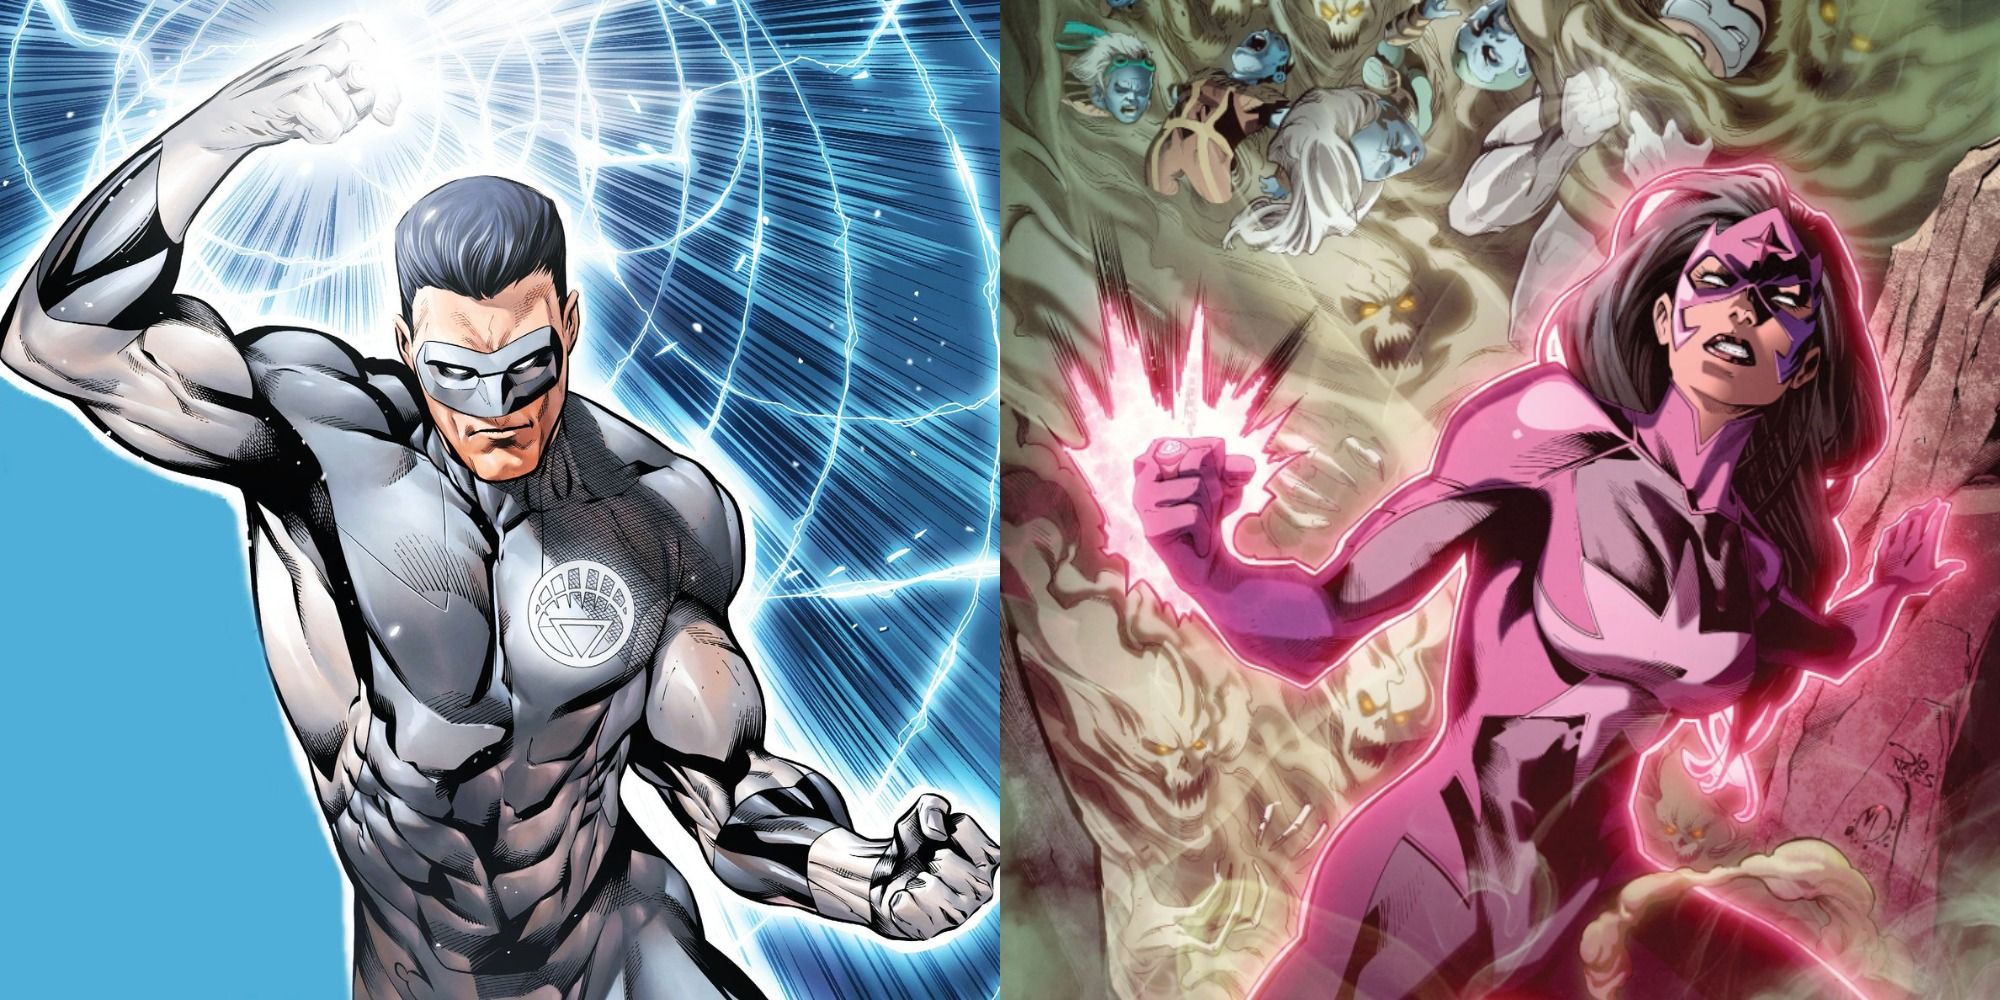 Imagem dividida mostrando Kyle Rayner e Star Sapphire na DC Comics.